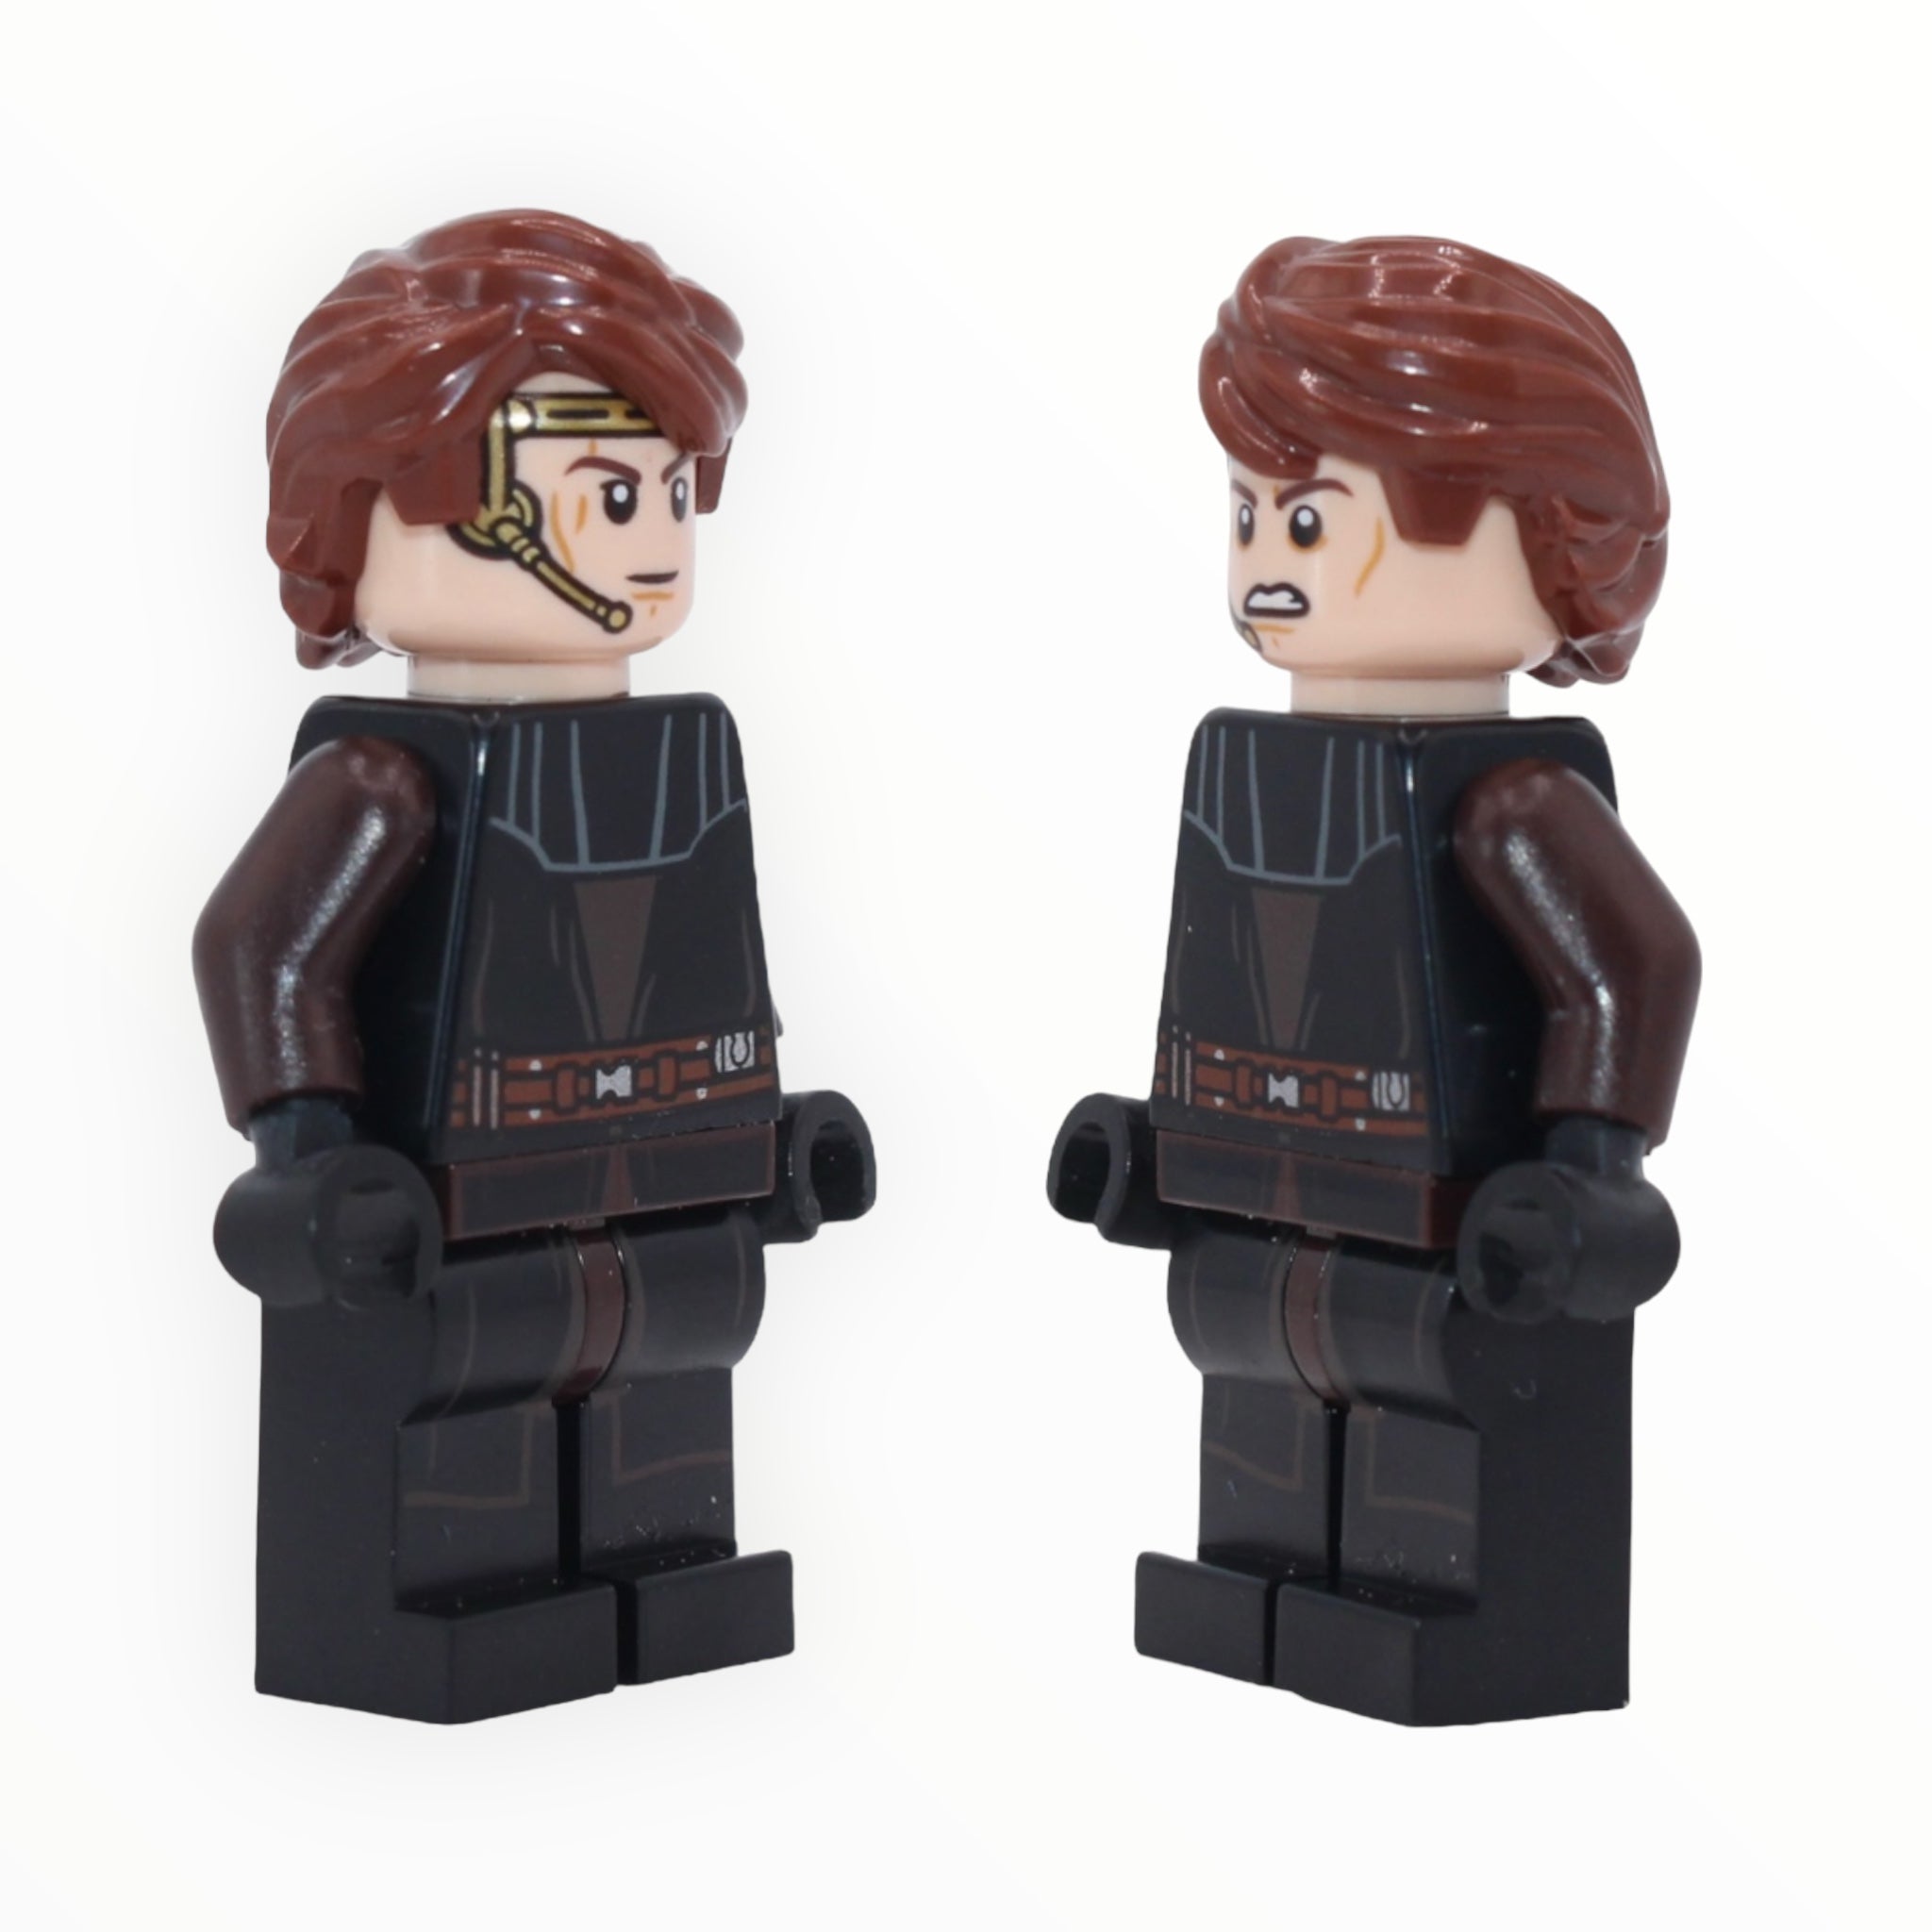 Anakin Skywalker (headset, armor, black legs with printing)